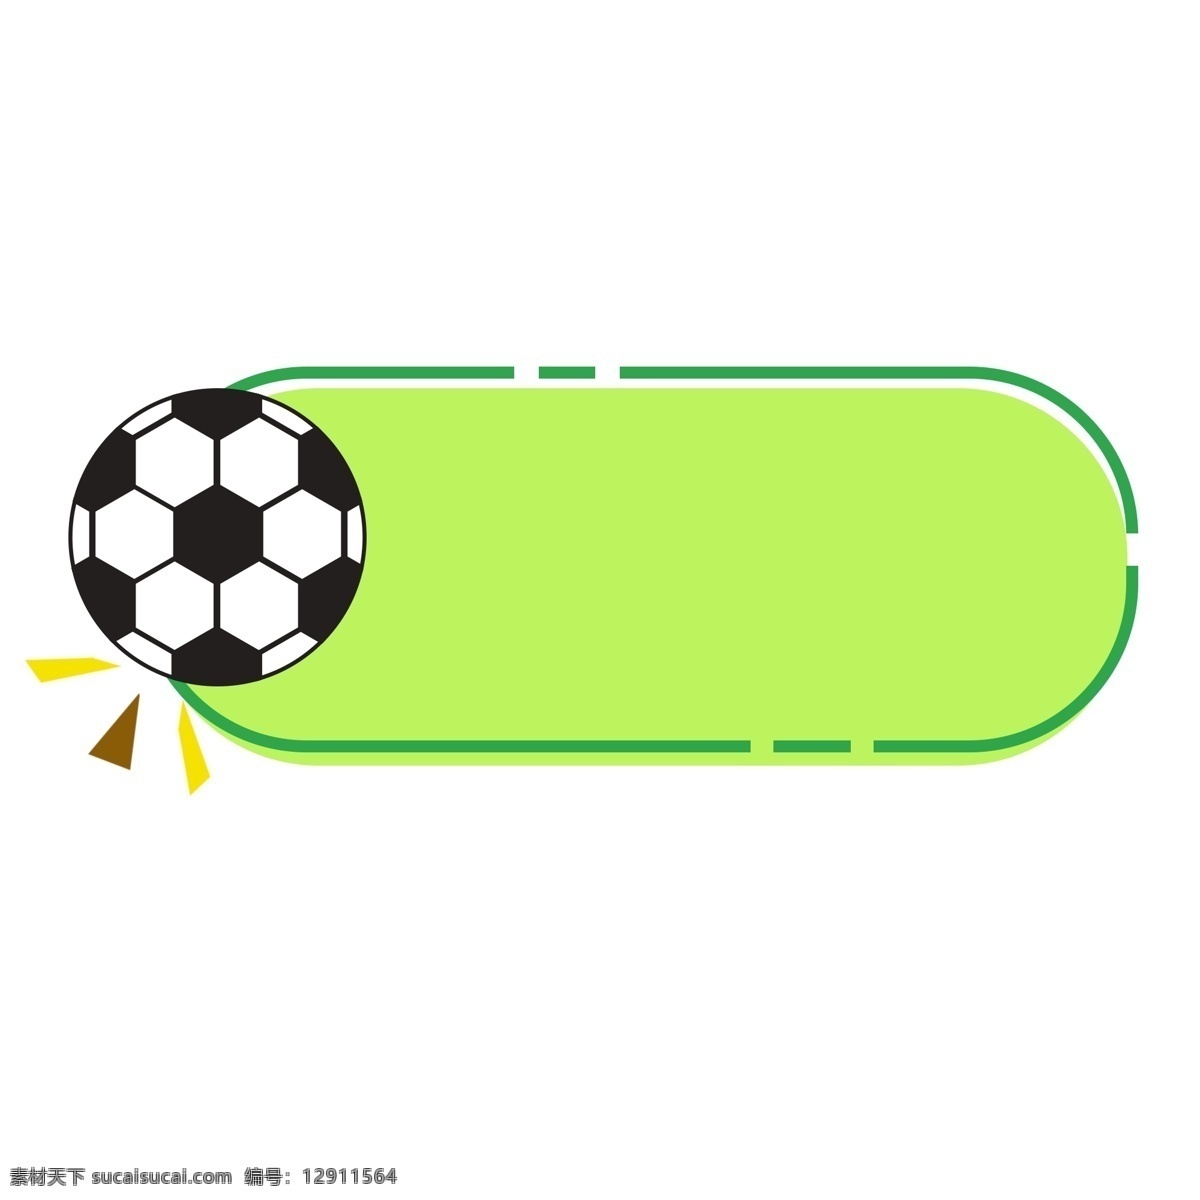 世界杯 足球 装饰 mbe 风 边框 2018 足球边框 手绘风格 mbe风格 风格 手绘足球 断线边框